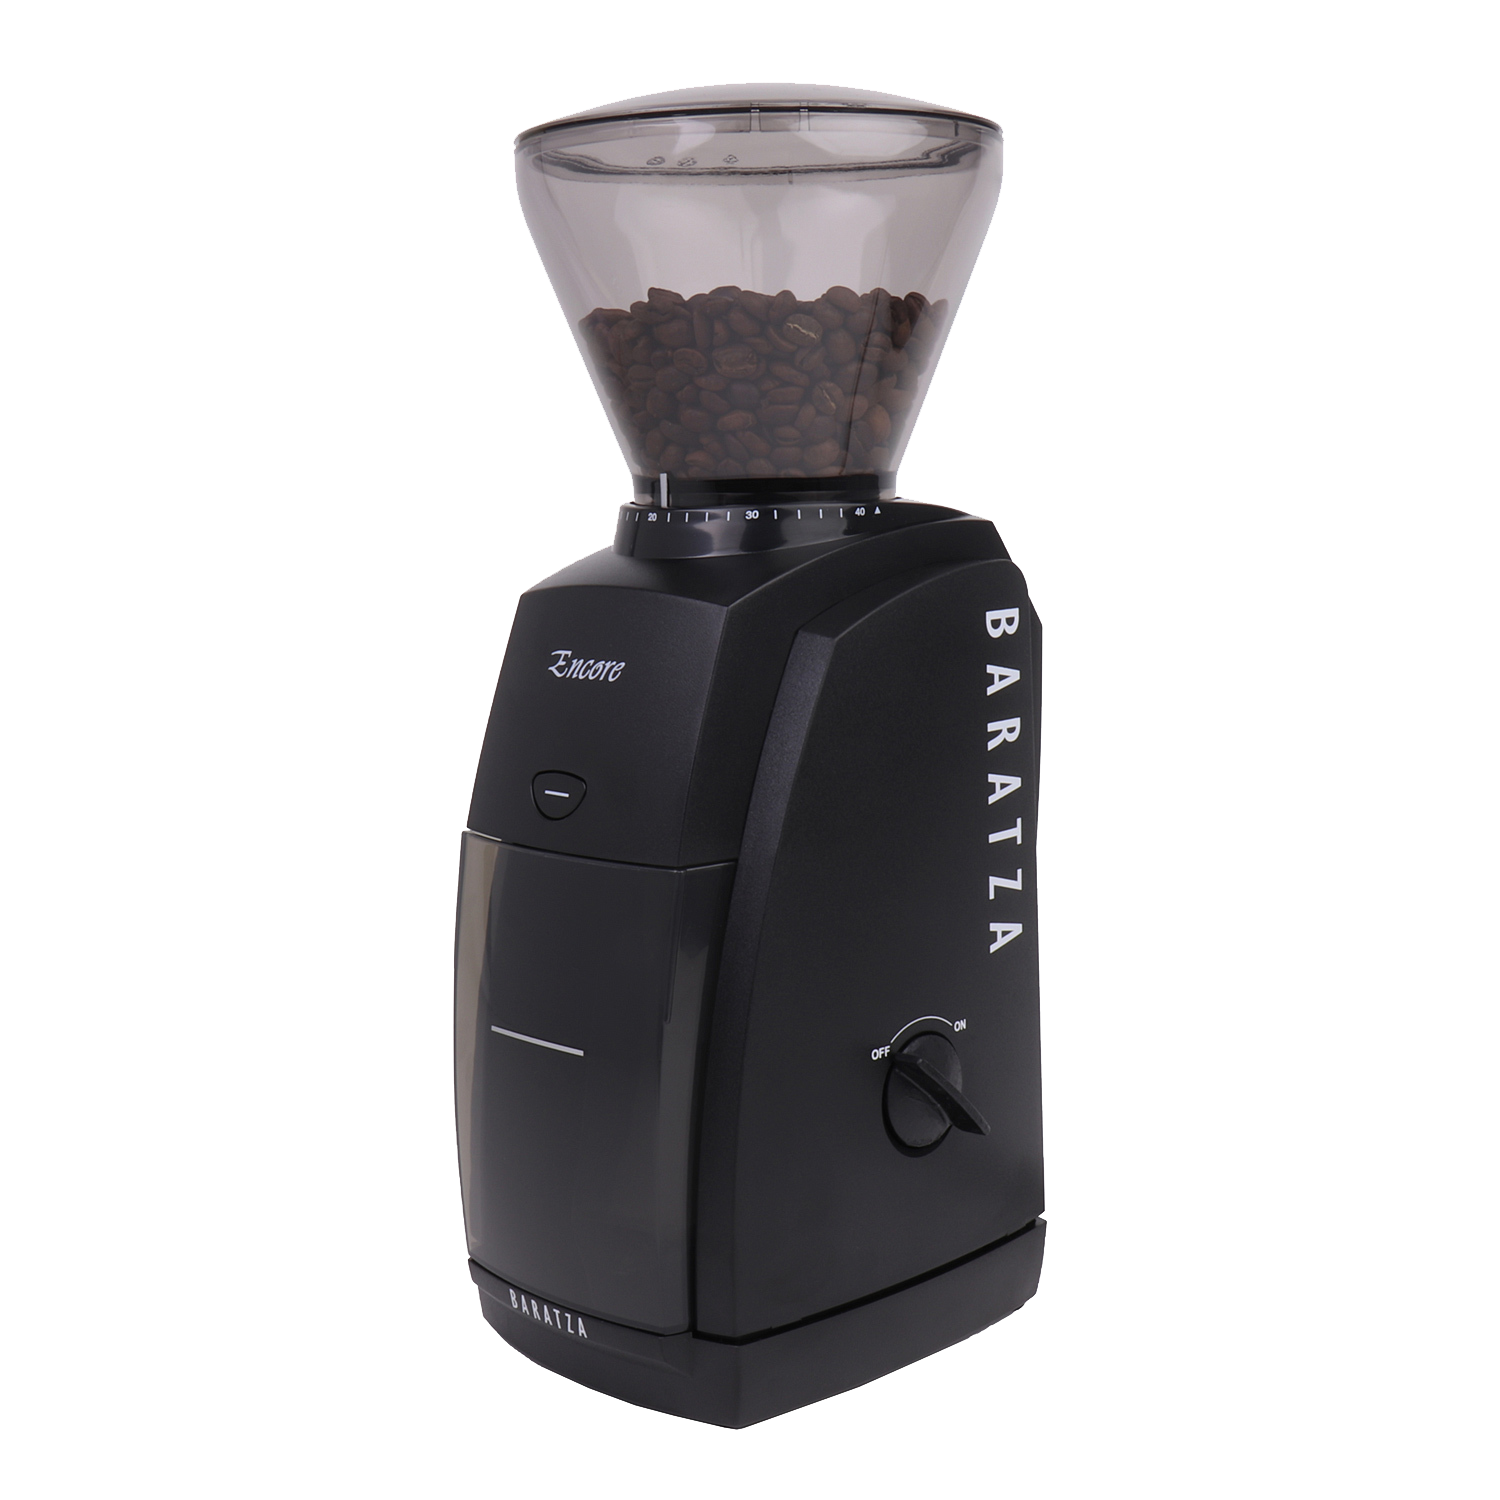 BARATZA Encore 40-mm-Stahl-Kegelmahlwerk) Kaffeemühle Schwarz Elektrische (110 Watt